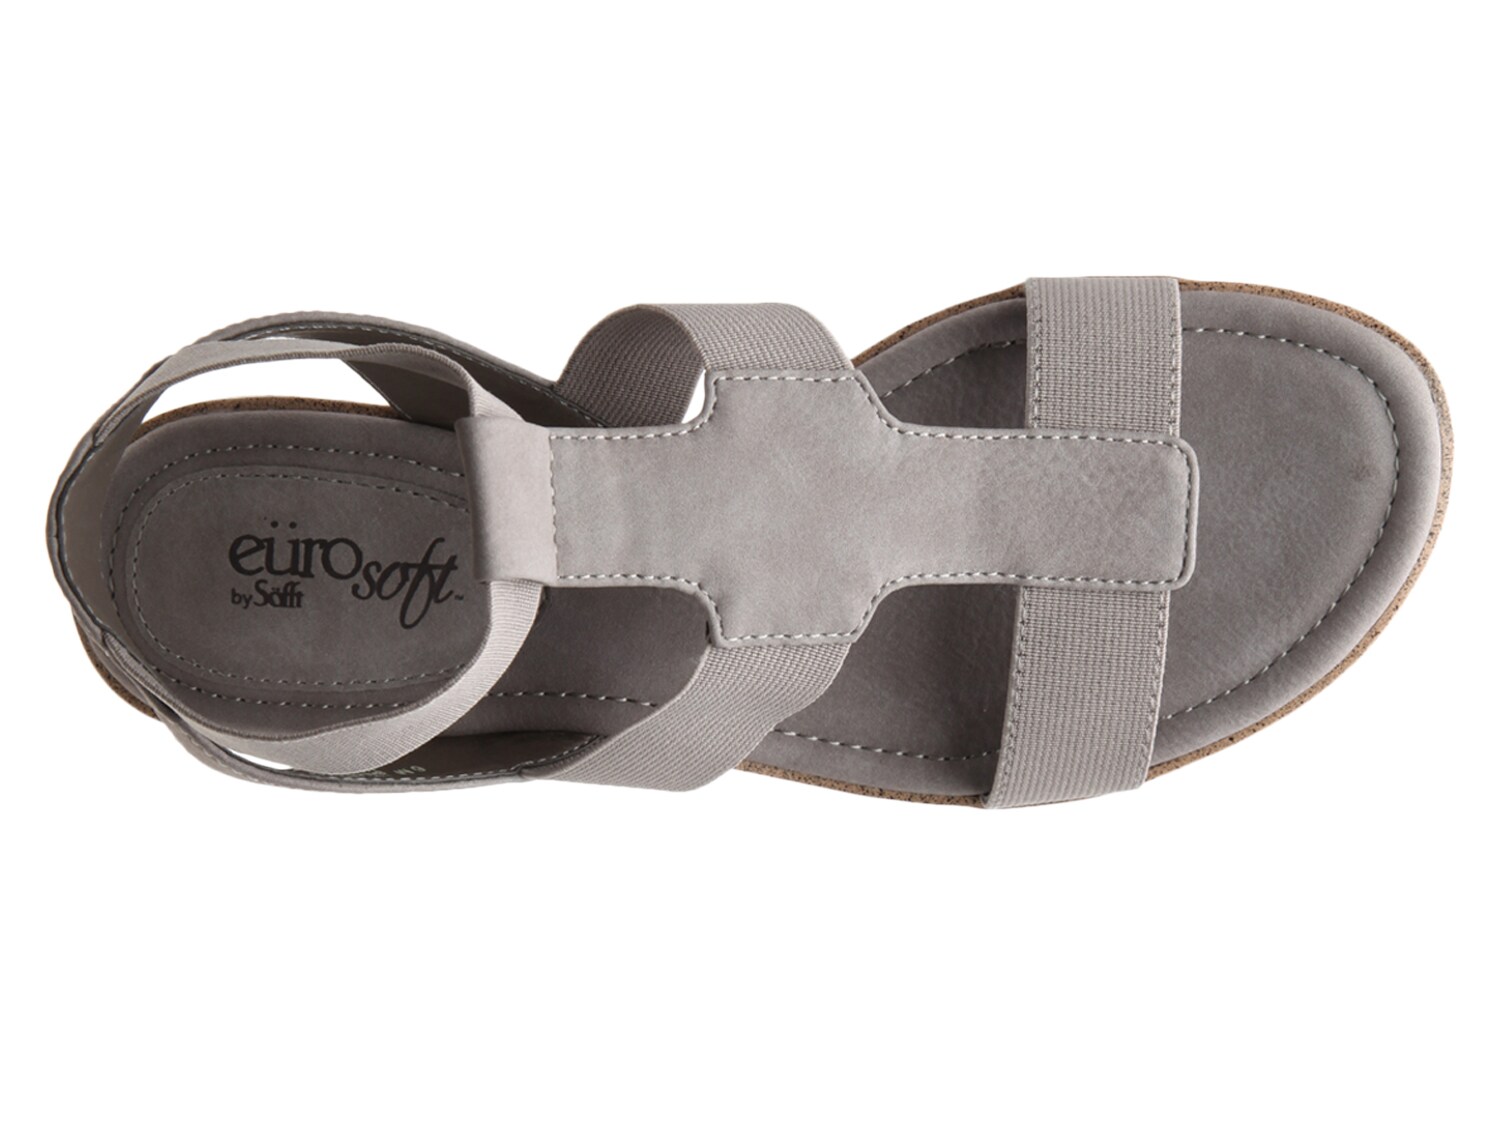 eurosoft celeste wedge sandal